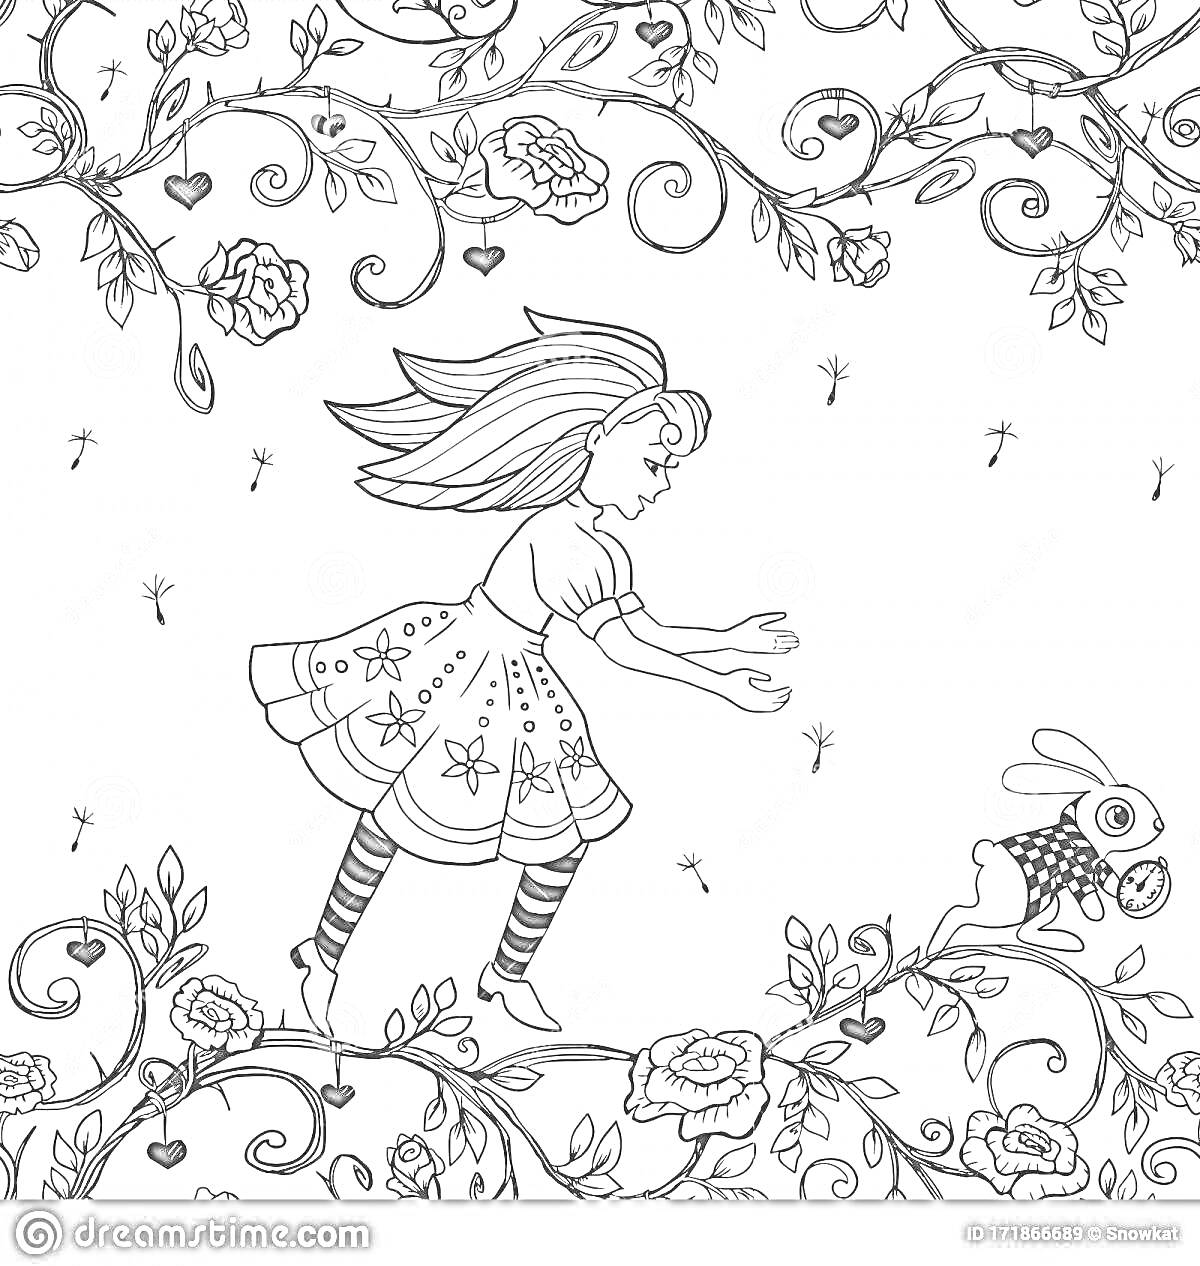 Раскраска Девочка и кролик в волшебном саду, окруженные цветами и ветвями